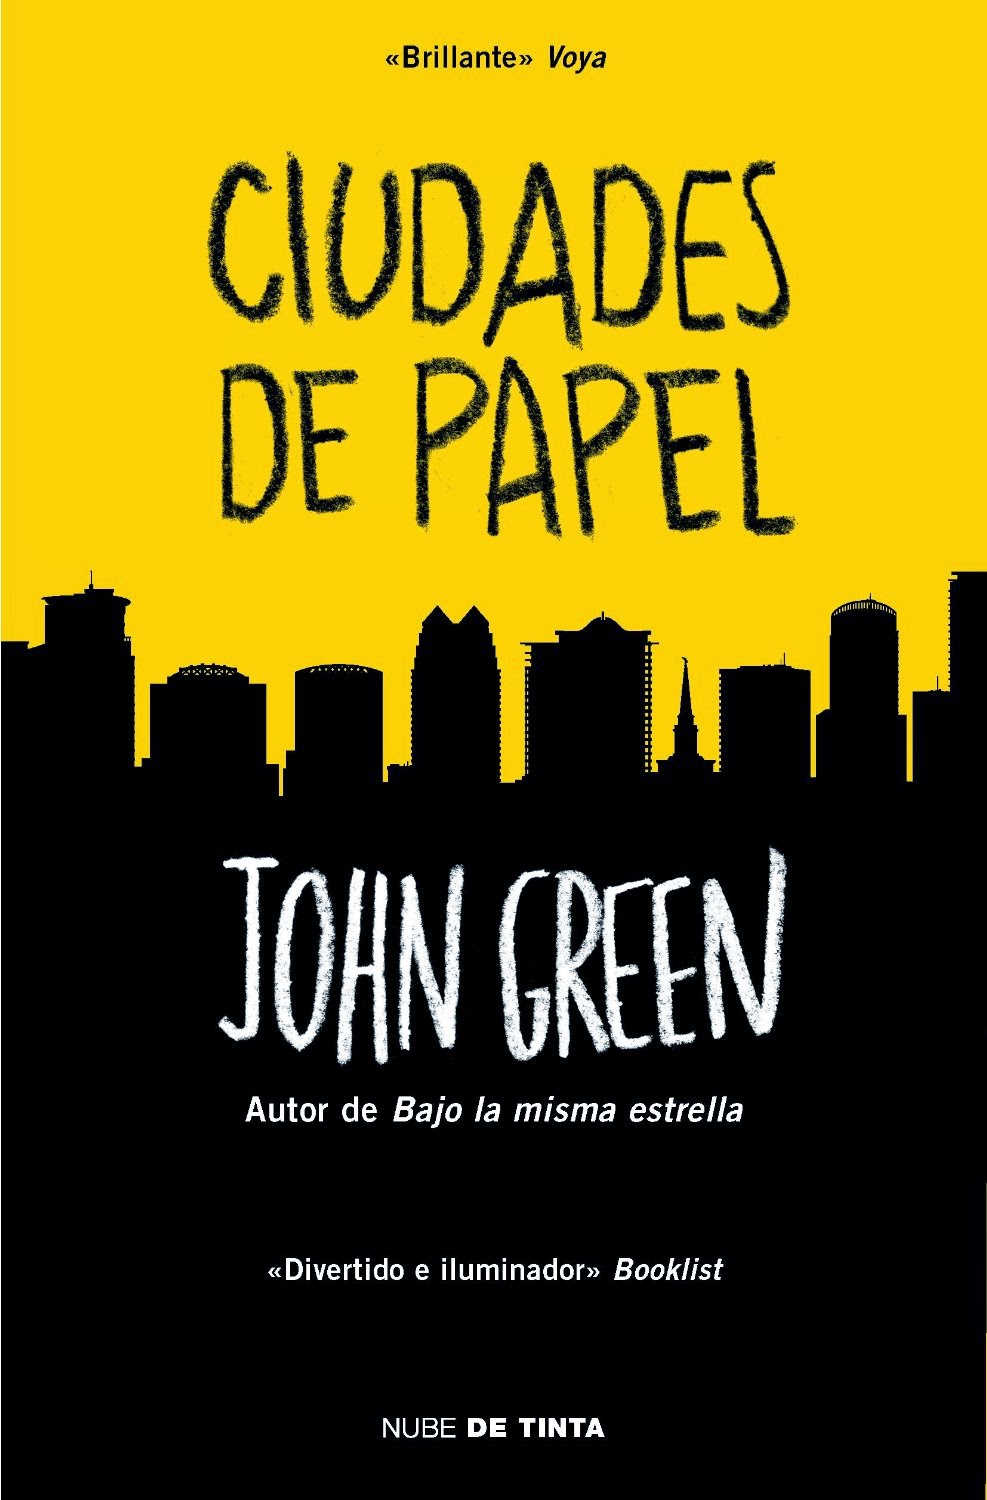 Un fenómeno en best seller: John Green | Ocio De Mente